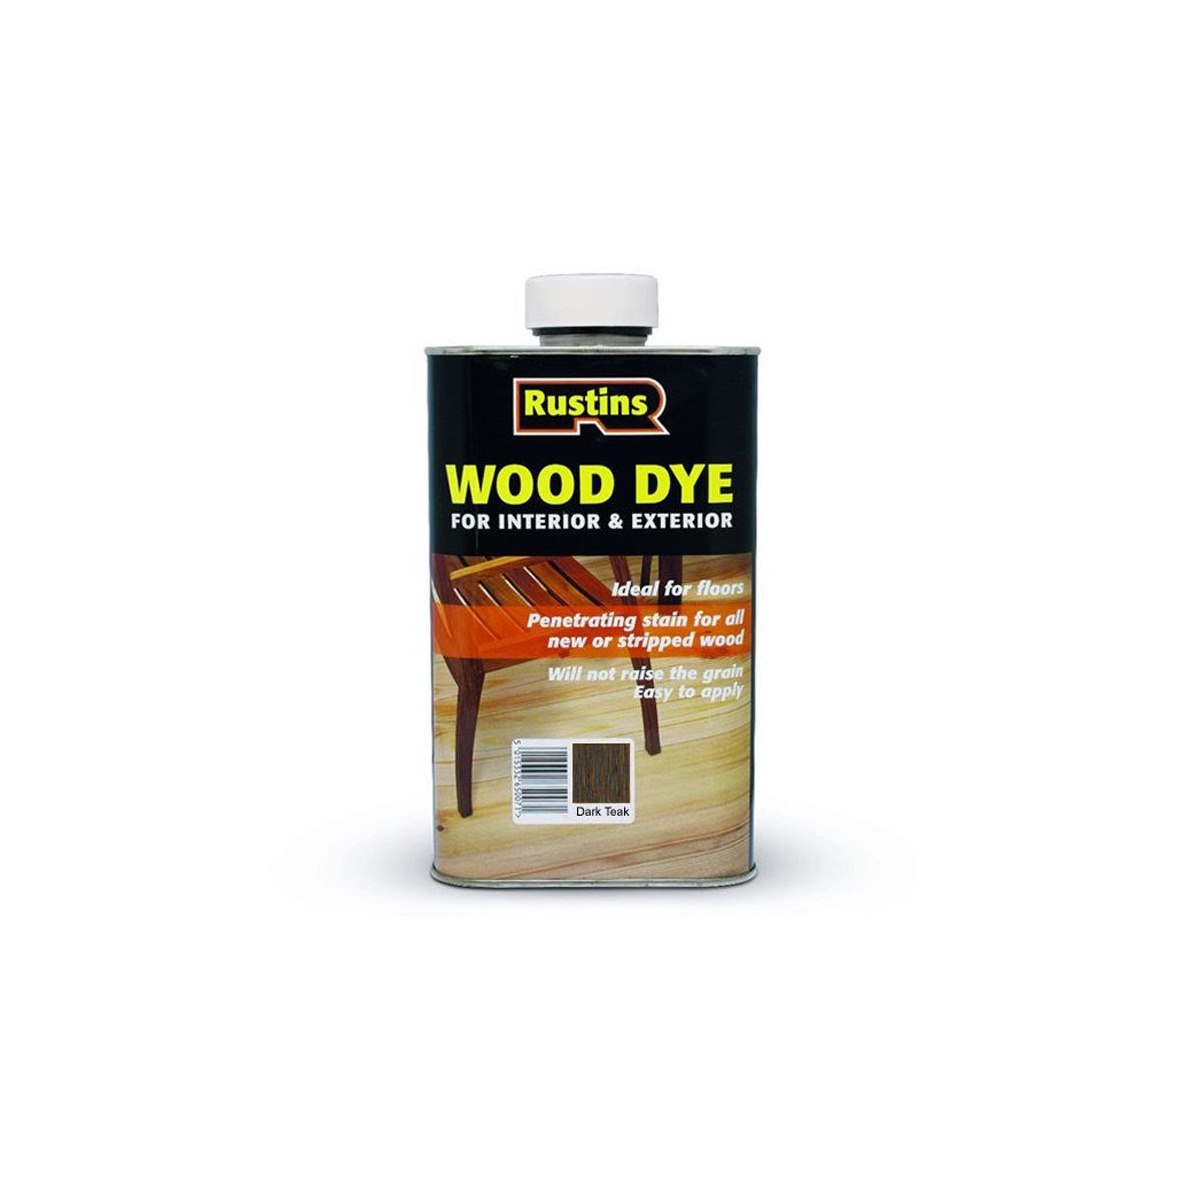 Rustins Wood Dye Dark Teak 1 Litre